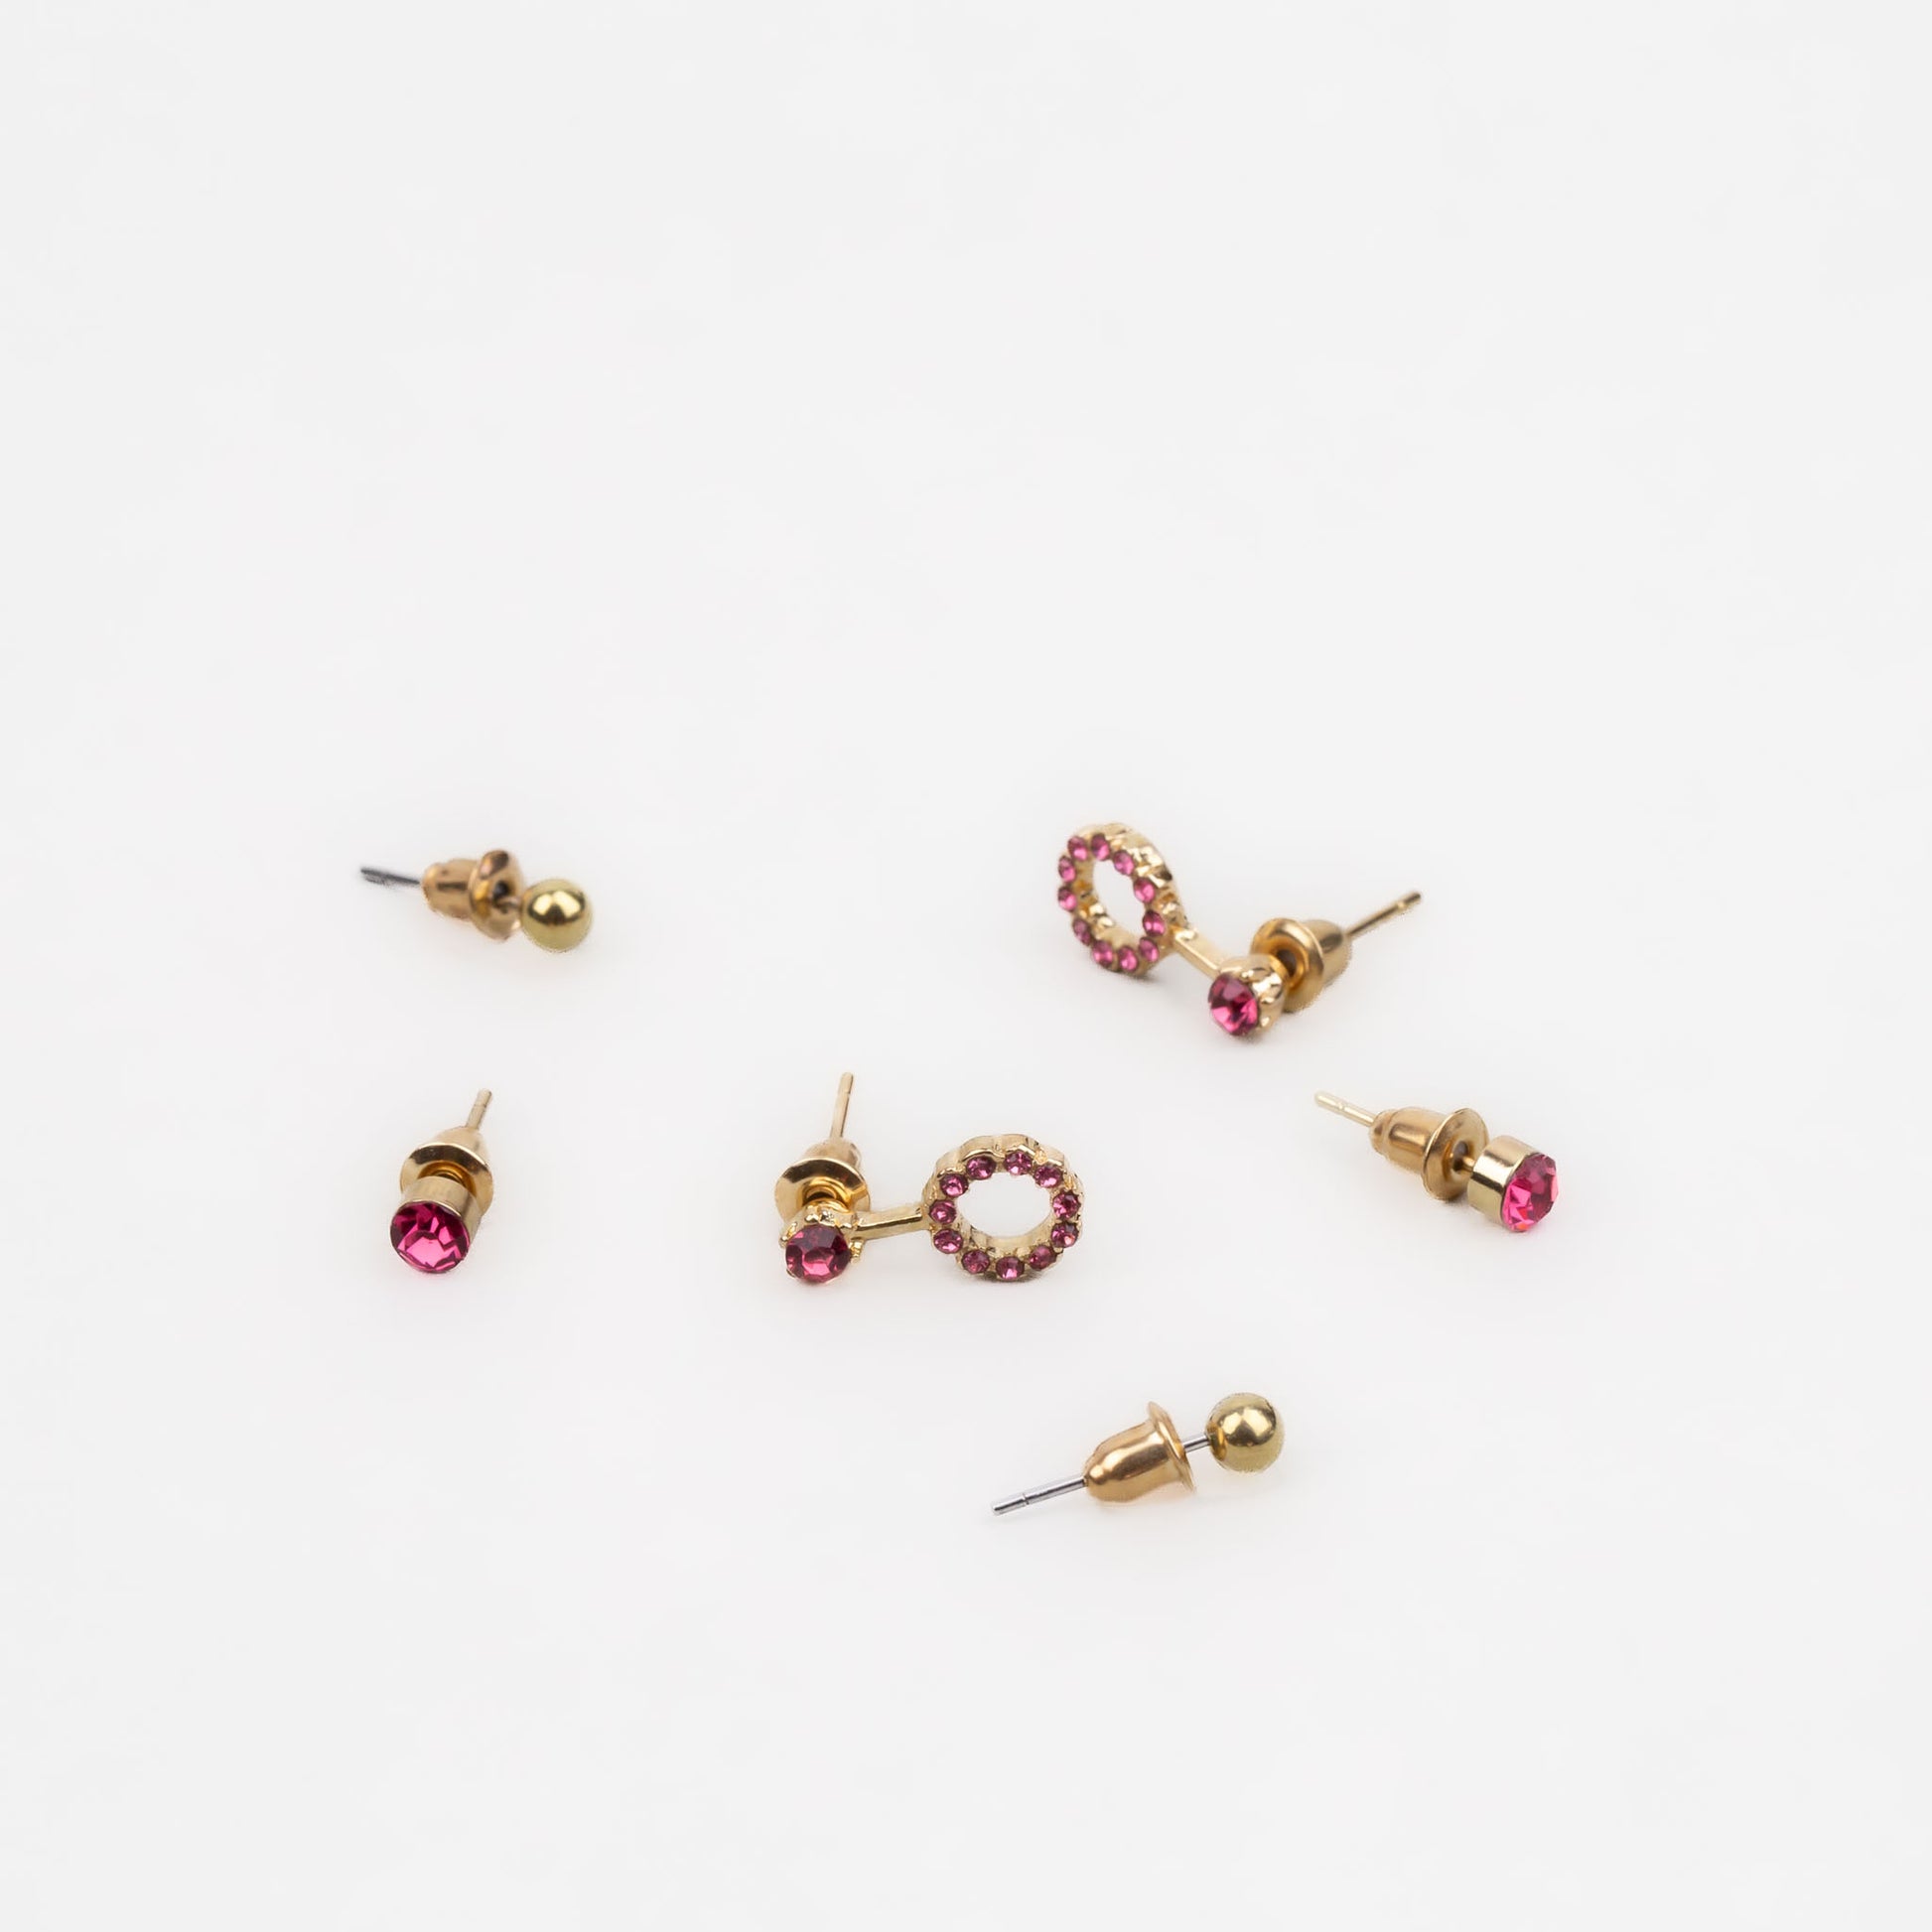 Cercei mici aurii discreți cu formă de amuletă și pietre, set 3 perechi - Roz